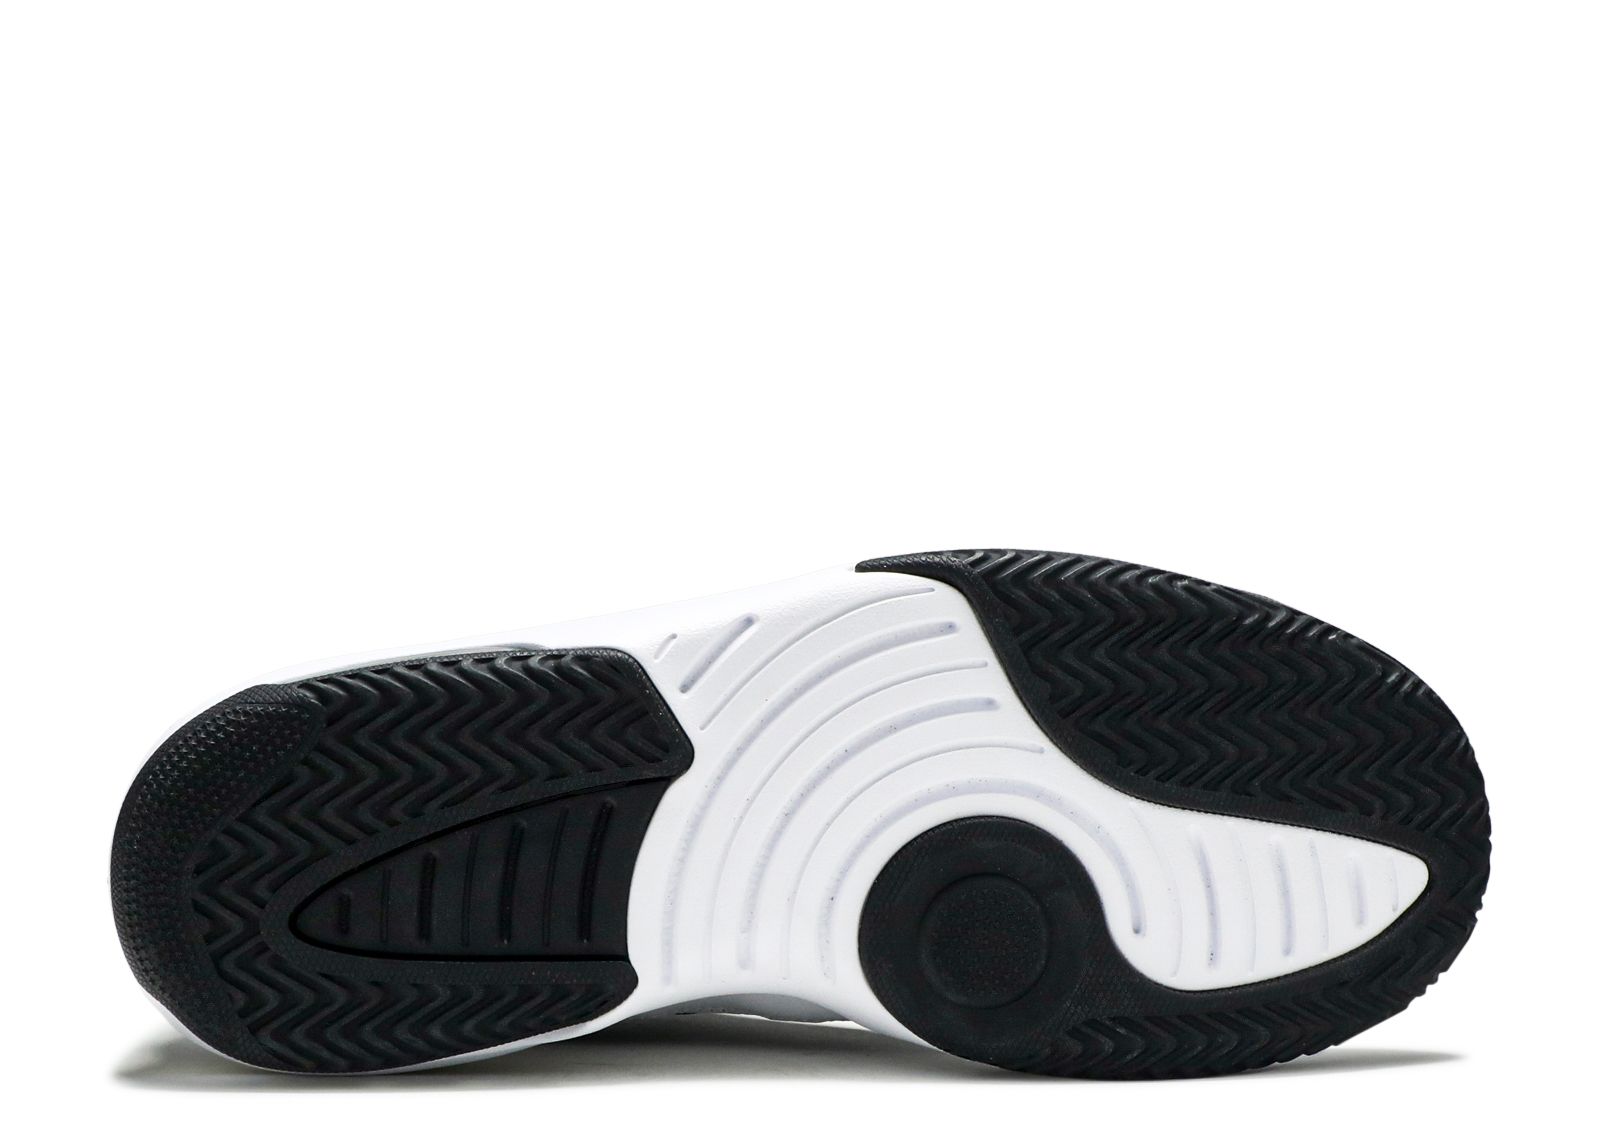 Jordan Max Aura 'White Black Gold' Air Jordan - AQ9084 107 - white/metallic | Club